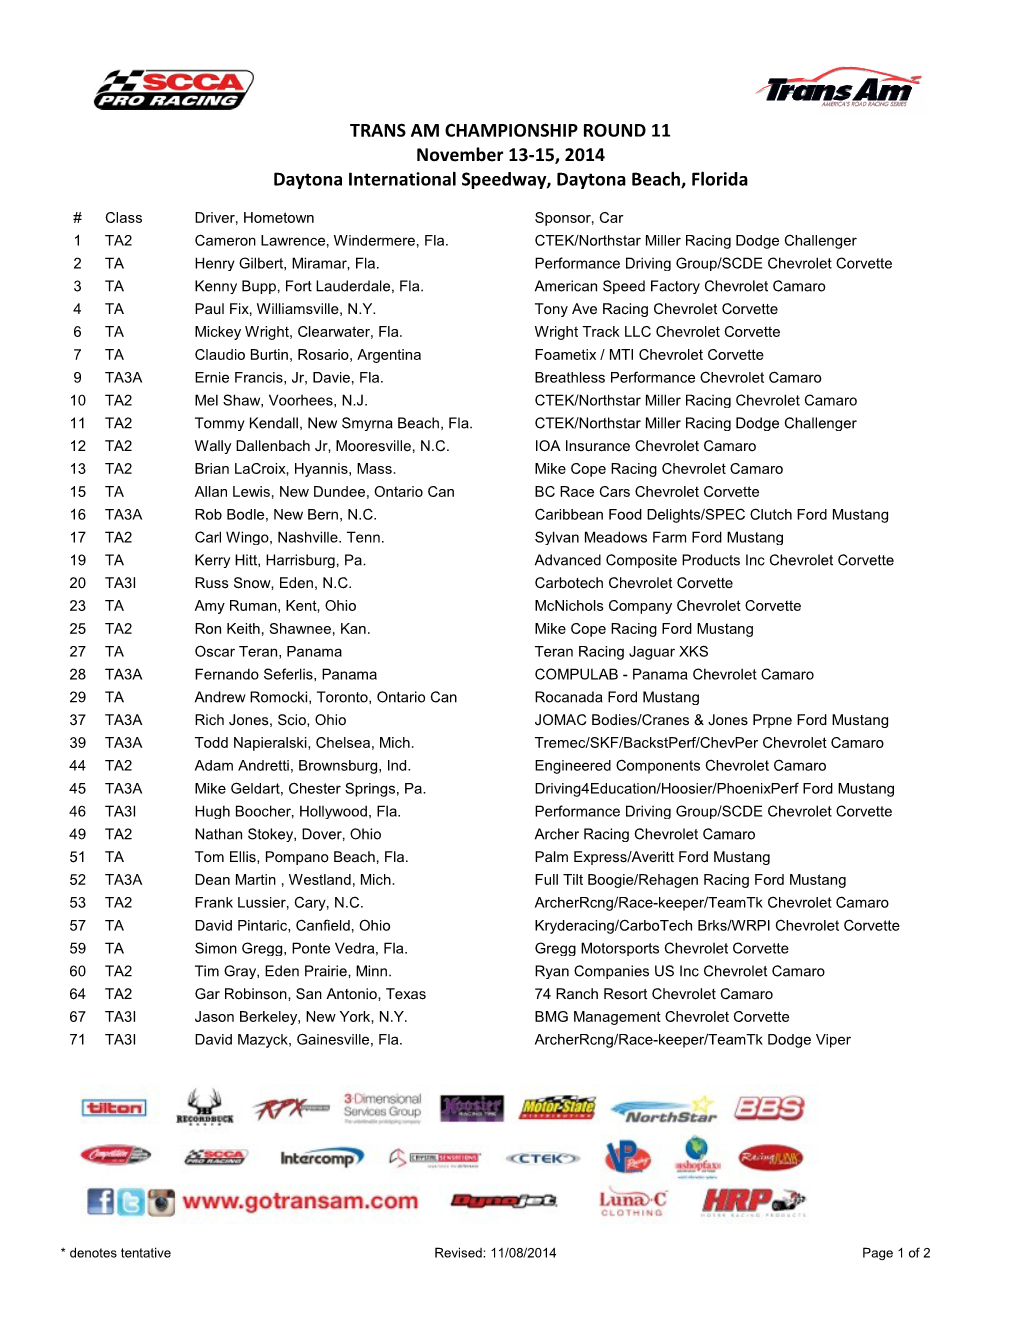 TRANS AM CHAMPIONSHIP ROUND 11 November 13-15, 2014 Daytona International Speedway, Daytona Beach, Florida